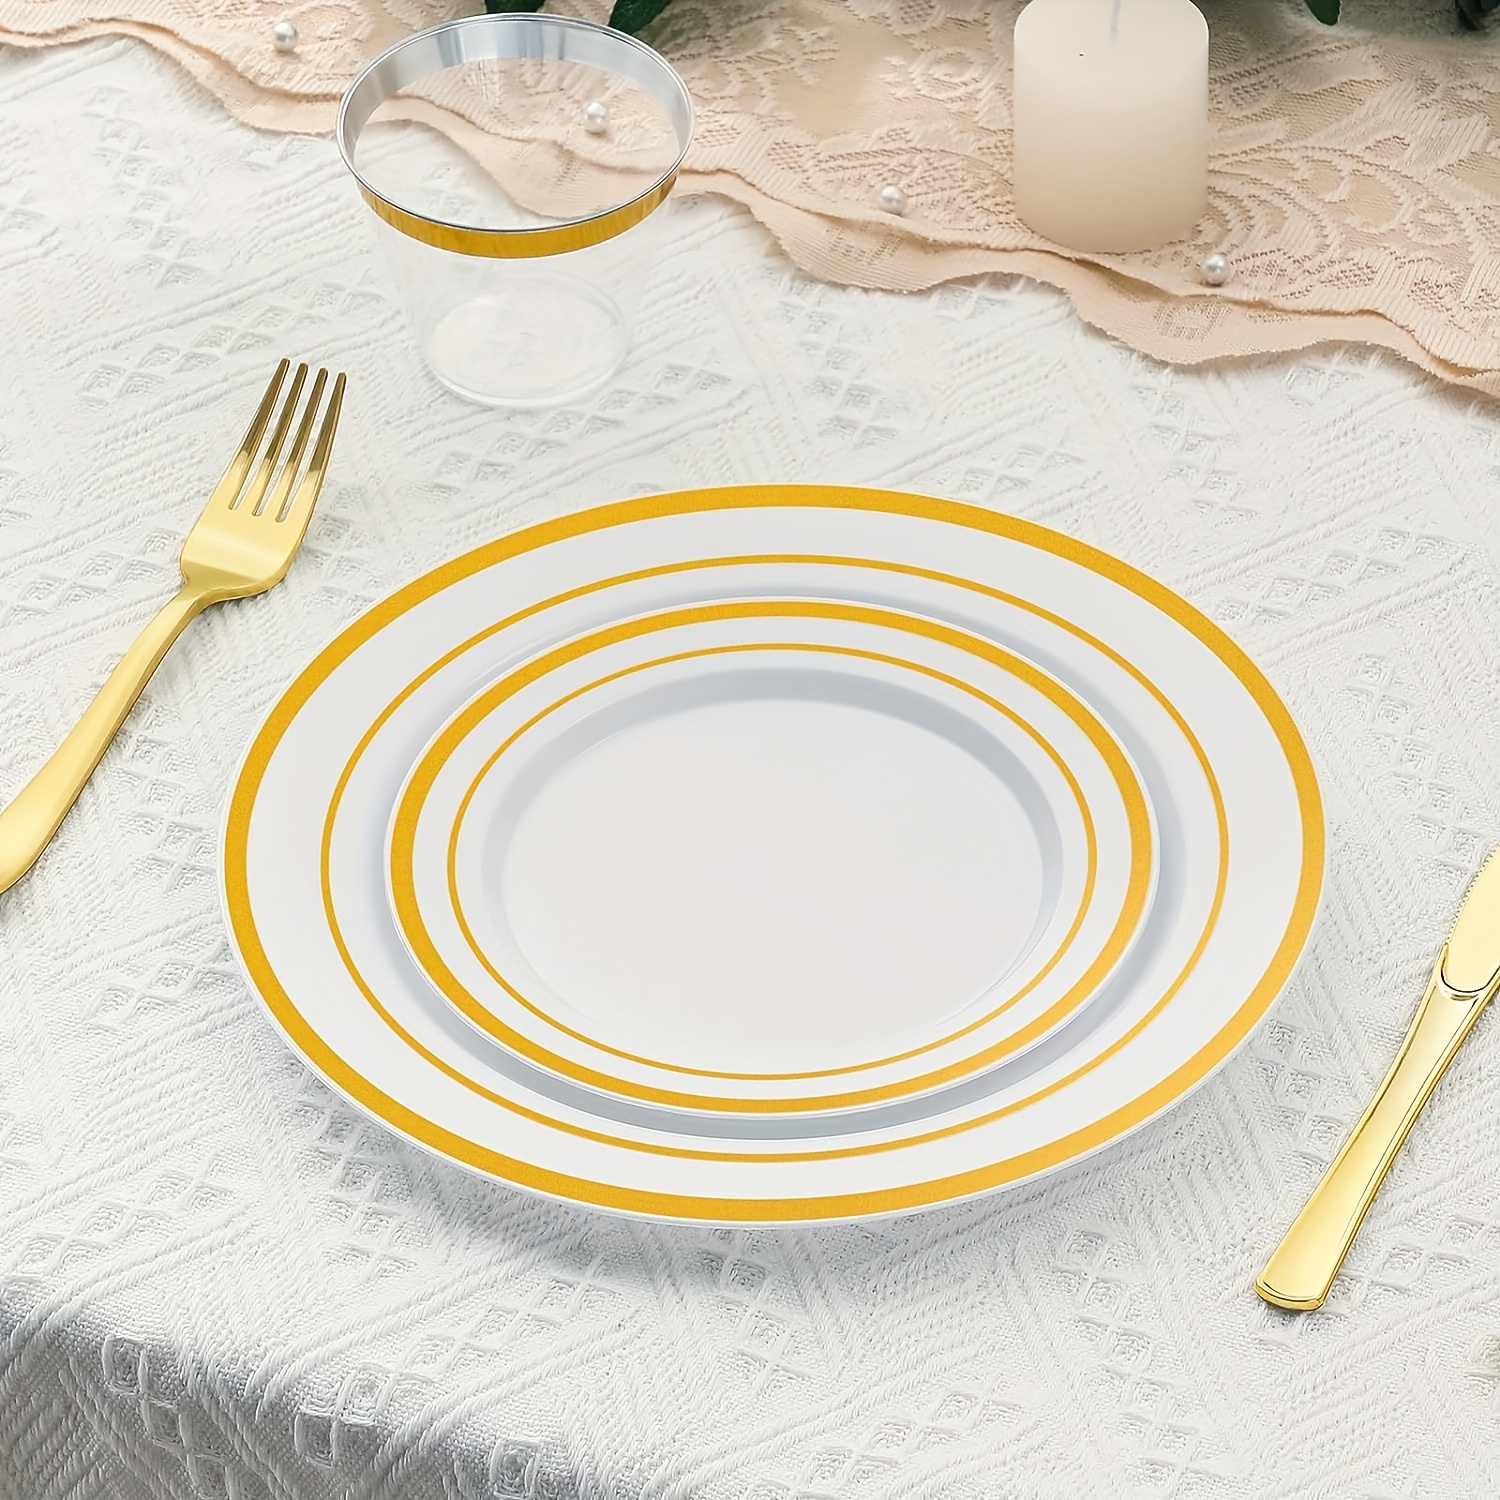  Munfix 100 platos de plástico para fiestas, con borde dorado  blanco, 50 platos llanos de alta calidad de 10.25 pulgadas y 50 platos  desechables de 7.5 pulgadas, elegantes platos de boda